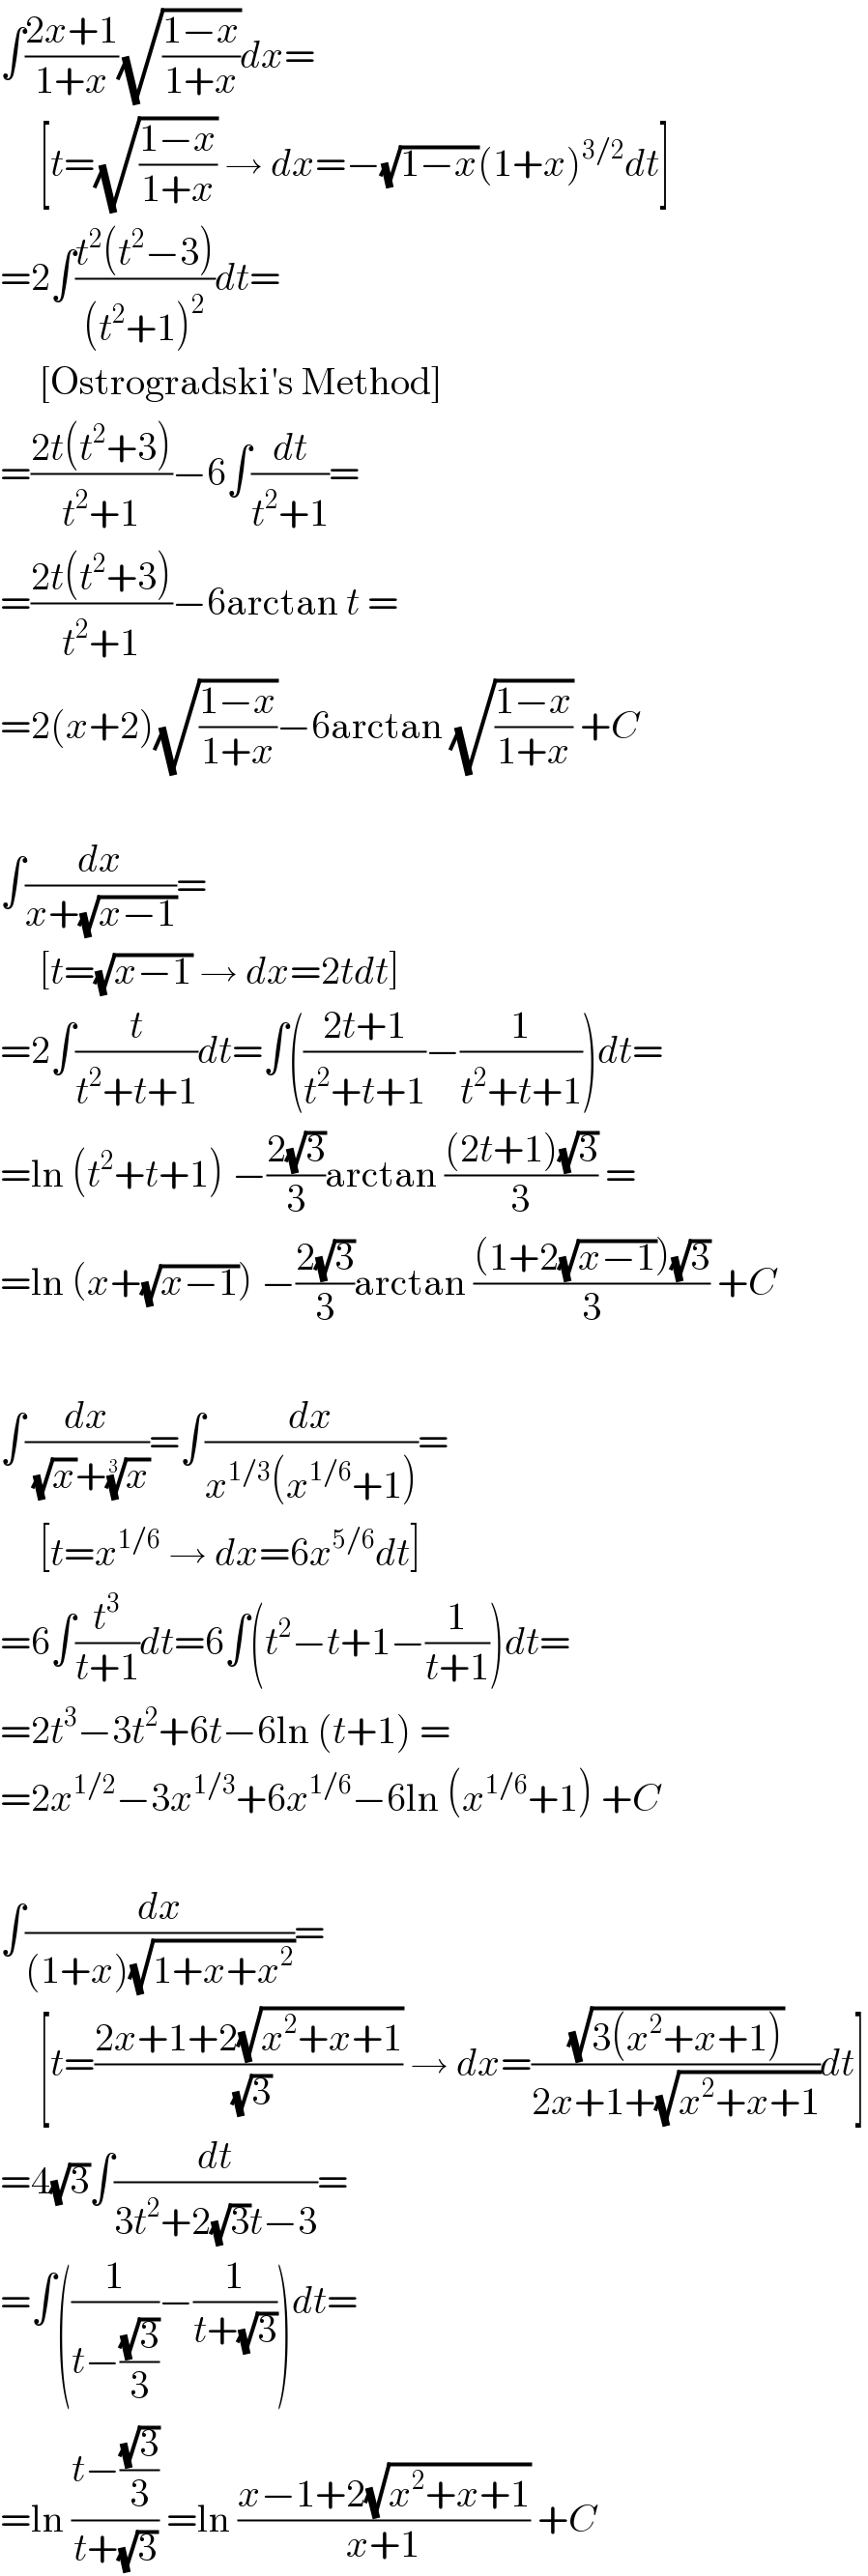 ∫((2x+1)/(1+x))(√((1−x)/(1+x)))dx=       [t=(√((1−x)/(1+x))) → dx=−(√(1−x))(1+x)^(3/2) dt]  =2∫((t^2 (t^2 −3))/((t^2 +1)^2 ))dt=       [Ostrogradski′s Method]  =((2t(t^2 +3))/(t^2 +1))−6∫(dt/(t^2 +1))=  =((2t(t^2 +3))/(t^2 +1))−6arctan t =  =2(x+2)(√((1−x)/(1+x)))−6arctan (√((1−x)/(1+x))) +C    ∫(dx/(x+(√(x−1))))=       [t=(√(x−1)) → dx=2tdt]  =2∫(t/(t^2 +t+1))dt=∫(((2t+1)/(t^2 +t+1))−(1/(t^2 +t+1)))dt=  =ln (t^2 +t+1) −((2(√3))/3)arctan (((2t+1)(√3))/3) =  =ln (x+(√(x−1))) −((2(√3))/3)arctan (((1+2(√(x−1)))(√3))/3) +C    ∫(dx/( (√x)+(x)^(1/3) ))=∫(dx/(x^(1/3) (x^(1/6) +1)))=       [t=x^(1/6)  → dx=6x^(5/6) dt]  =6∫(t^3 /(t+1))dt=6∫(t^2 −t+1−(1/(t+1)))dt=  =2t^3 −3t^2 +6t−6ln (t+1) =  =2x^(1/2) −3x^(1/3) +6x^(1/6) −6ln (x^(1/6) +1) +C    ∫(dx/((1+x)(√(1+x+x^2 ))))=       [t=((2x+1+2(√(x^2 +x+1)))/( (√3))) → dx=((√(3(x^2 +x+1)))/(2x+1+(√(x^2 +x+1))))dt]  =4(√3)∫(dt/(3t^2 +2(√3)t−3))=  =∫((1/(t−((√3)/3)))−(1/(t+(√3))))dt=  =ln ((t−((√3)/3))/(t+(√3))) =ln ((x−1+2(√(x^2 +x+1)))/(x+1)) +C  